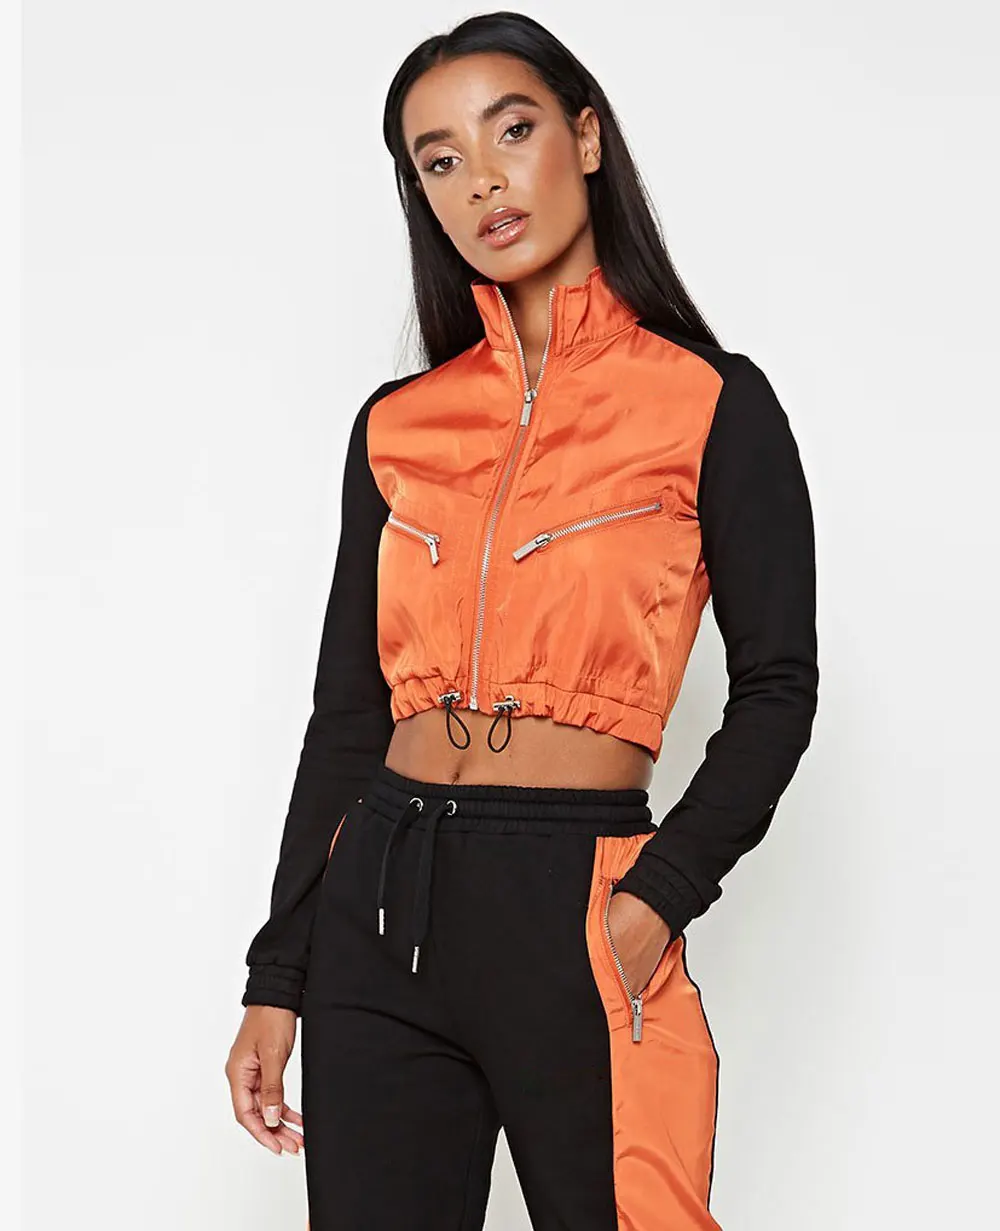 NEW Ladies Crop Top Hoodie Set Womens 2pcs Loungewear Suit Tracksuits Sweatshirt